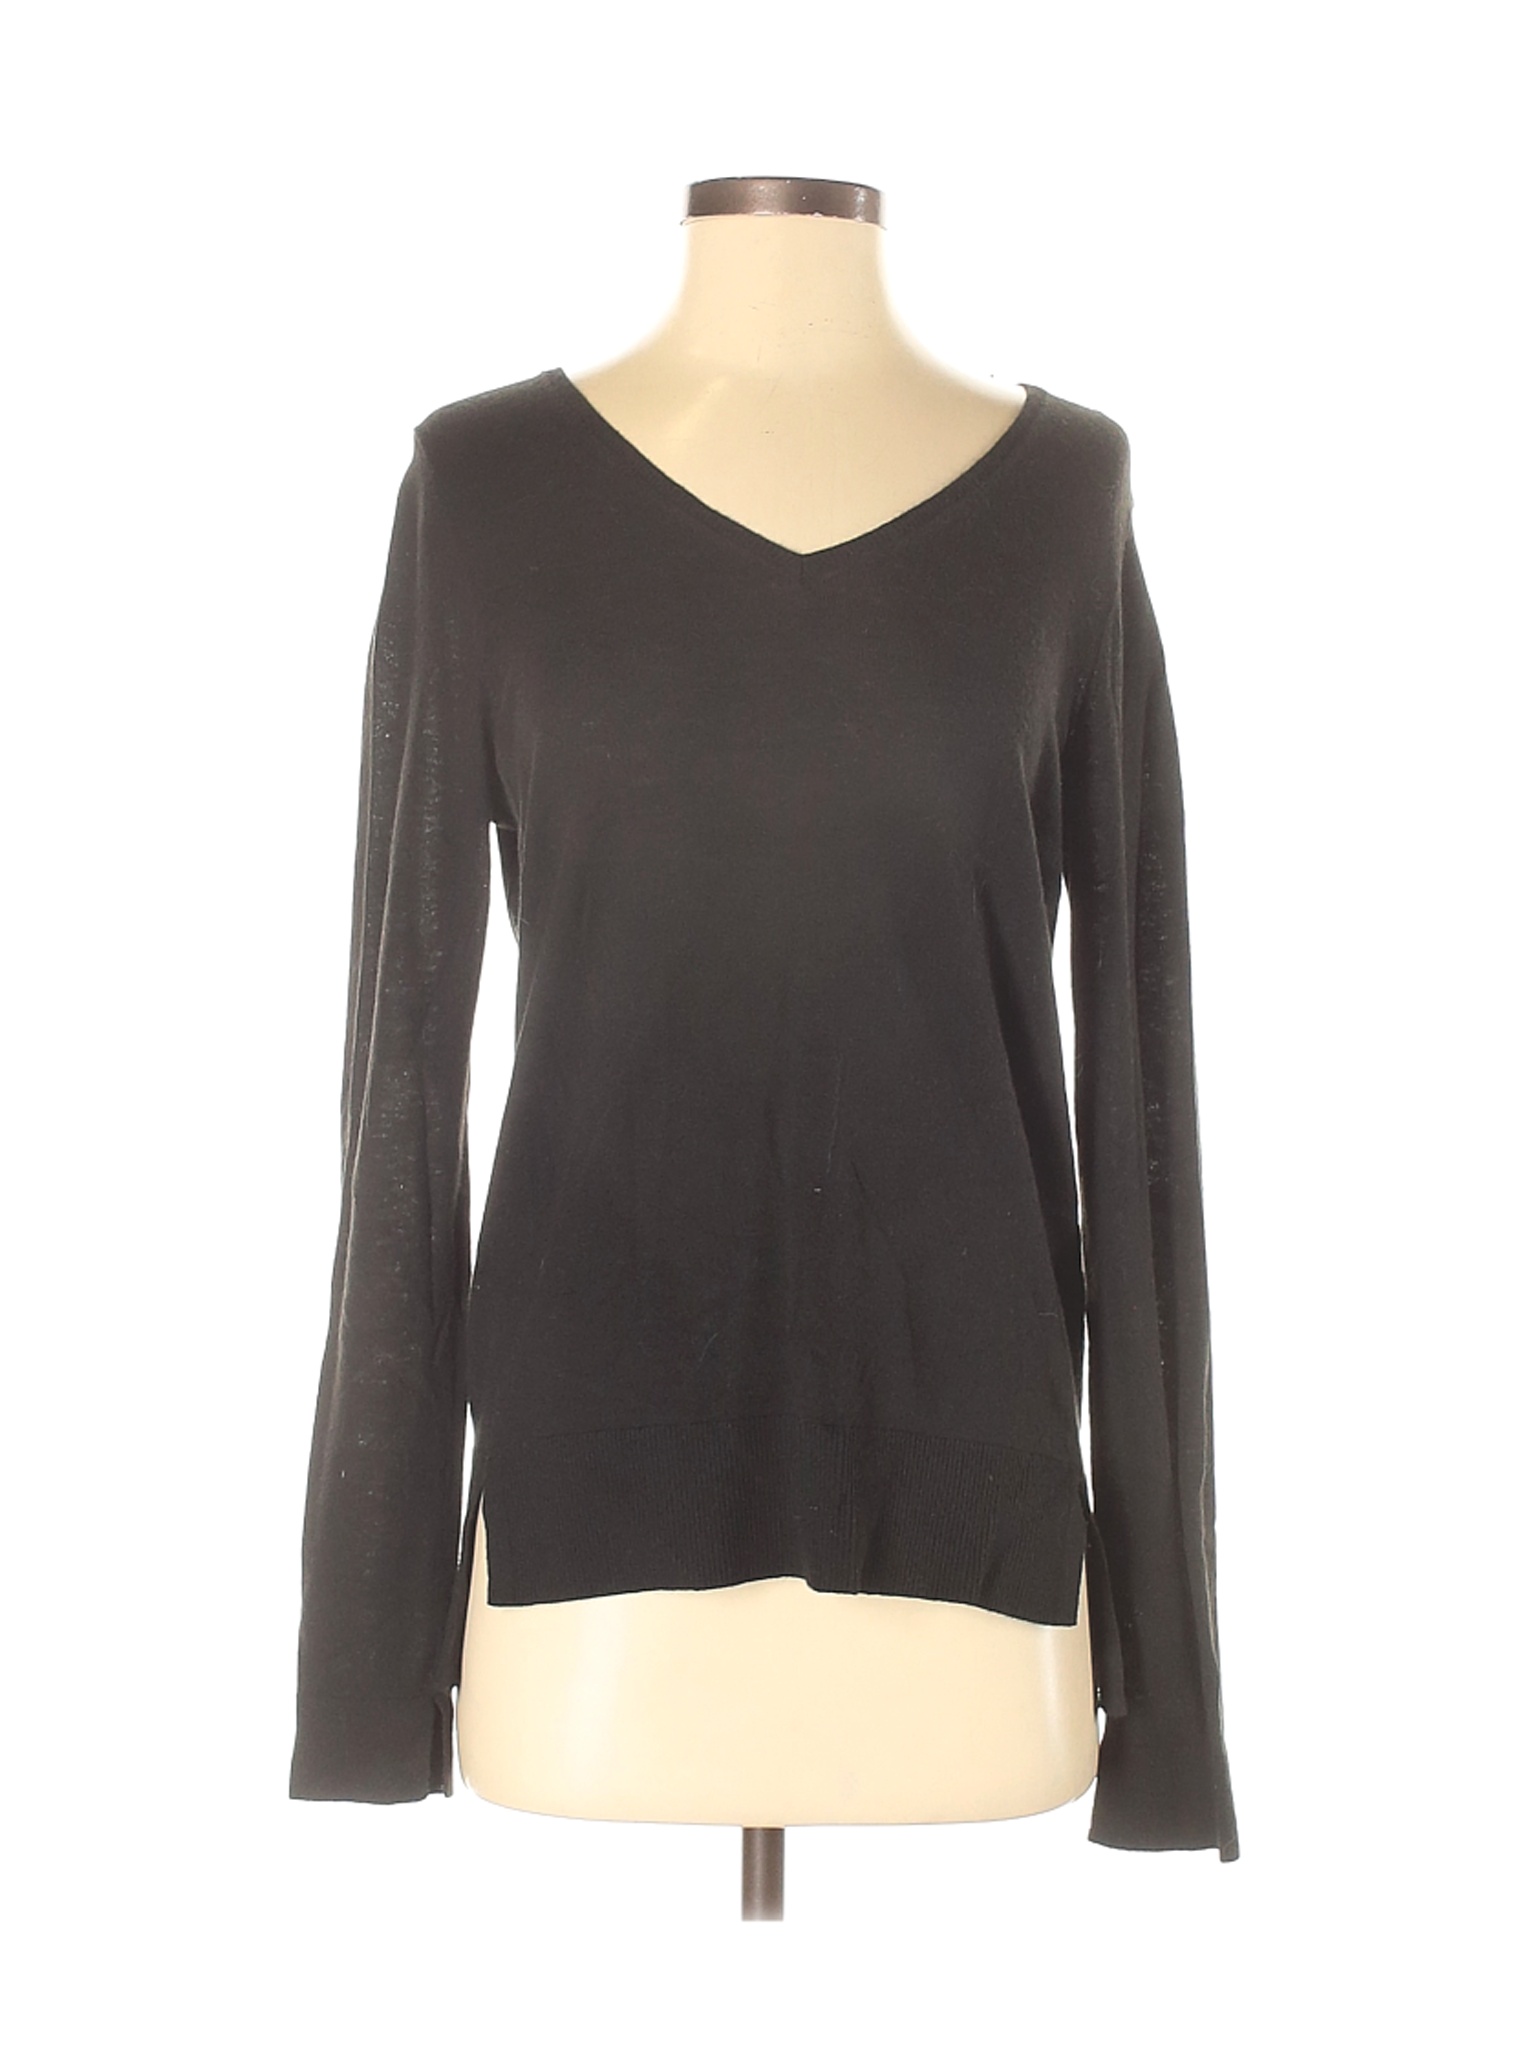 Ann Taylor LOFT Women Black Pullover Sweater XS | eBay